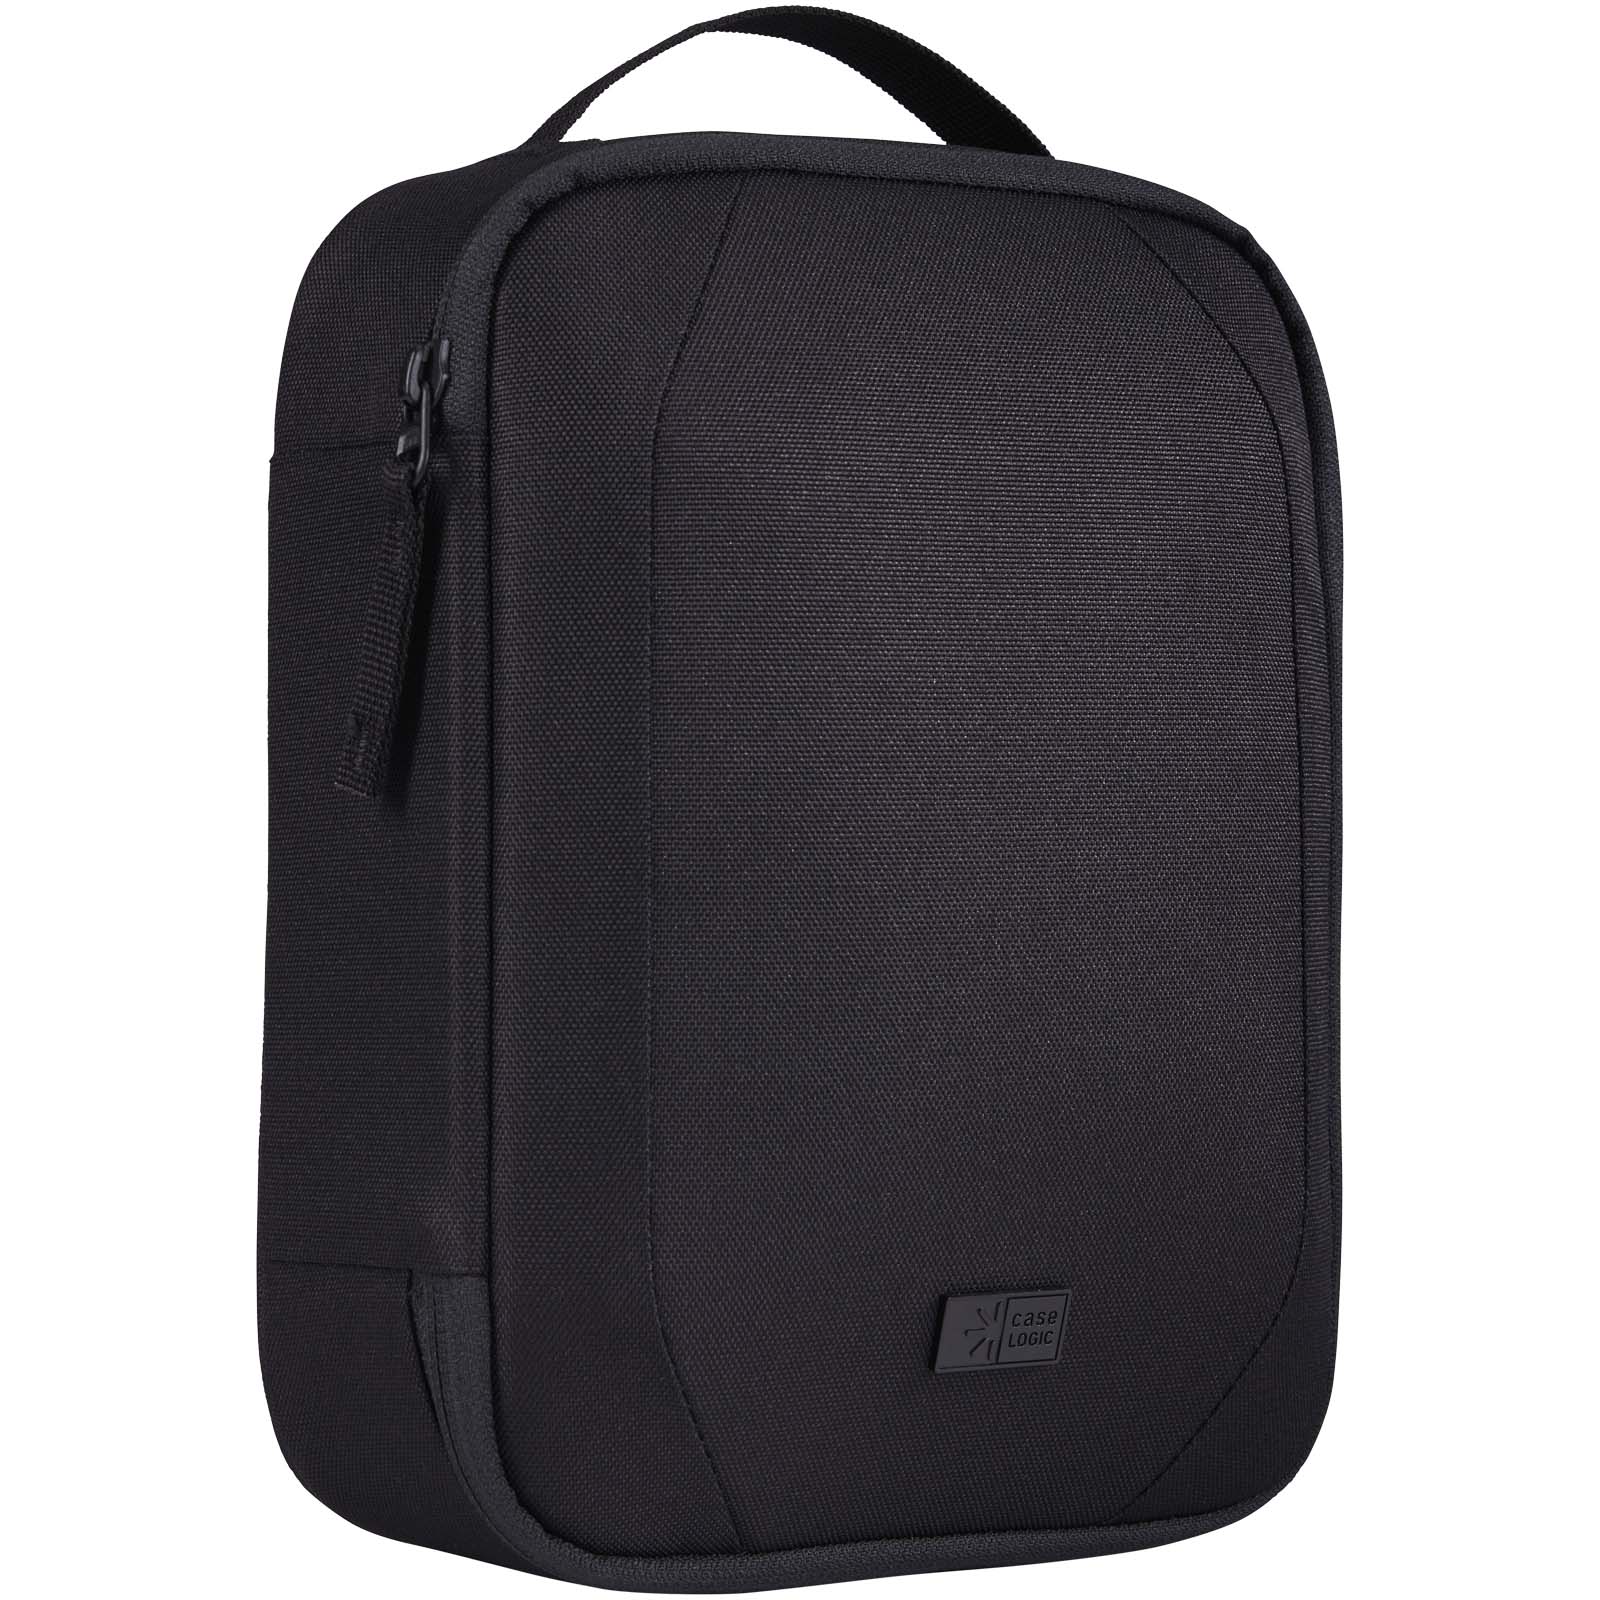 Bags - Case Logic Invigo accessories bag